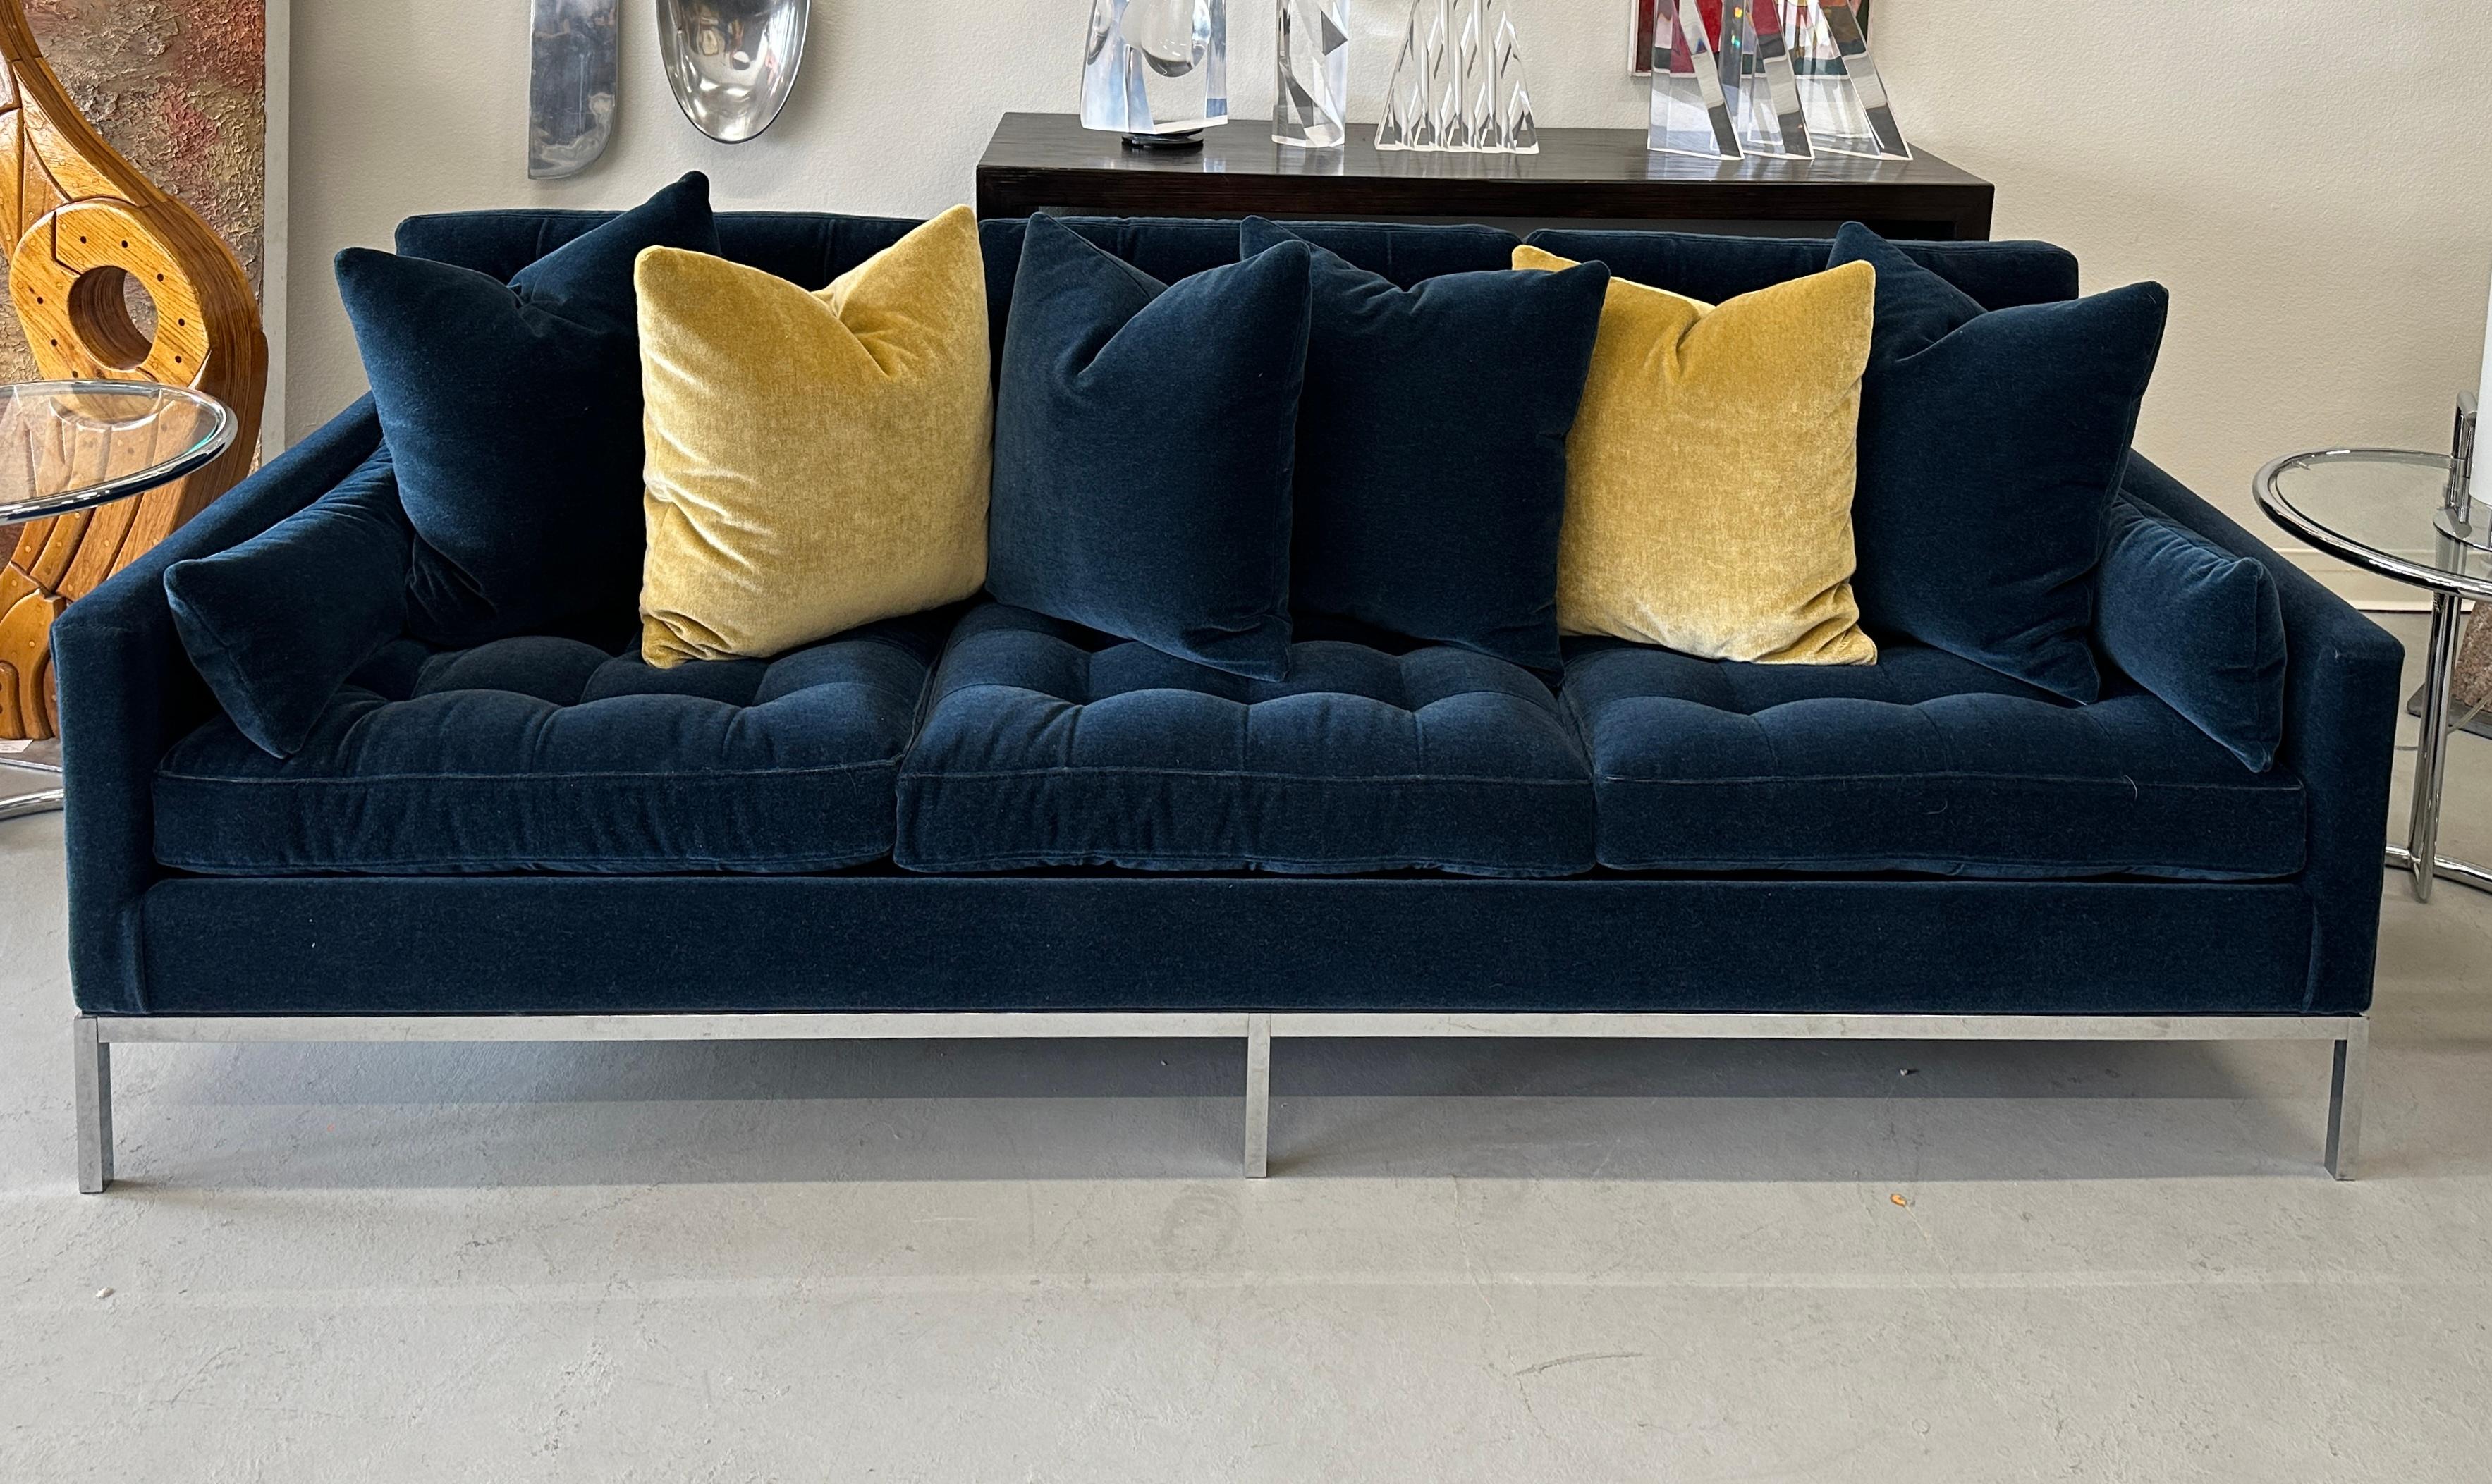 Ein atemberaubendes Florence-Knoll-Sofa aus den 1960er Jahren, das wir überarbeiten und mit einem schönen Kravet-Wollmohair neu beziehen ließen. Die Farbe wird Indigoblau genannt. Eine satte marineblaue Farbe. Wir haben gleichzeitig 6 zusätzliche